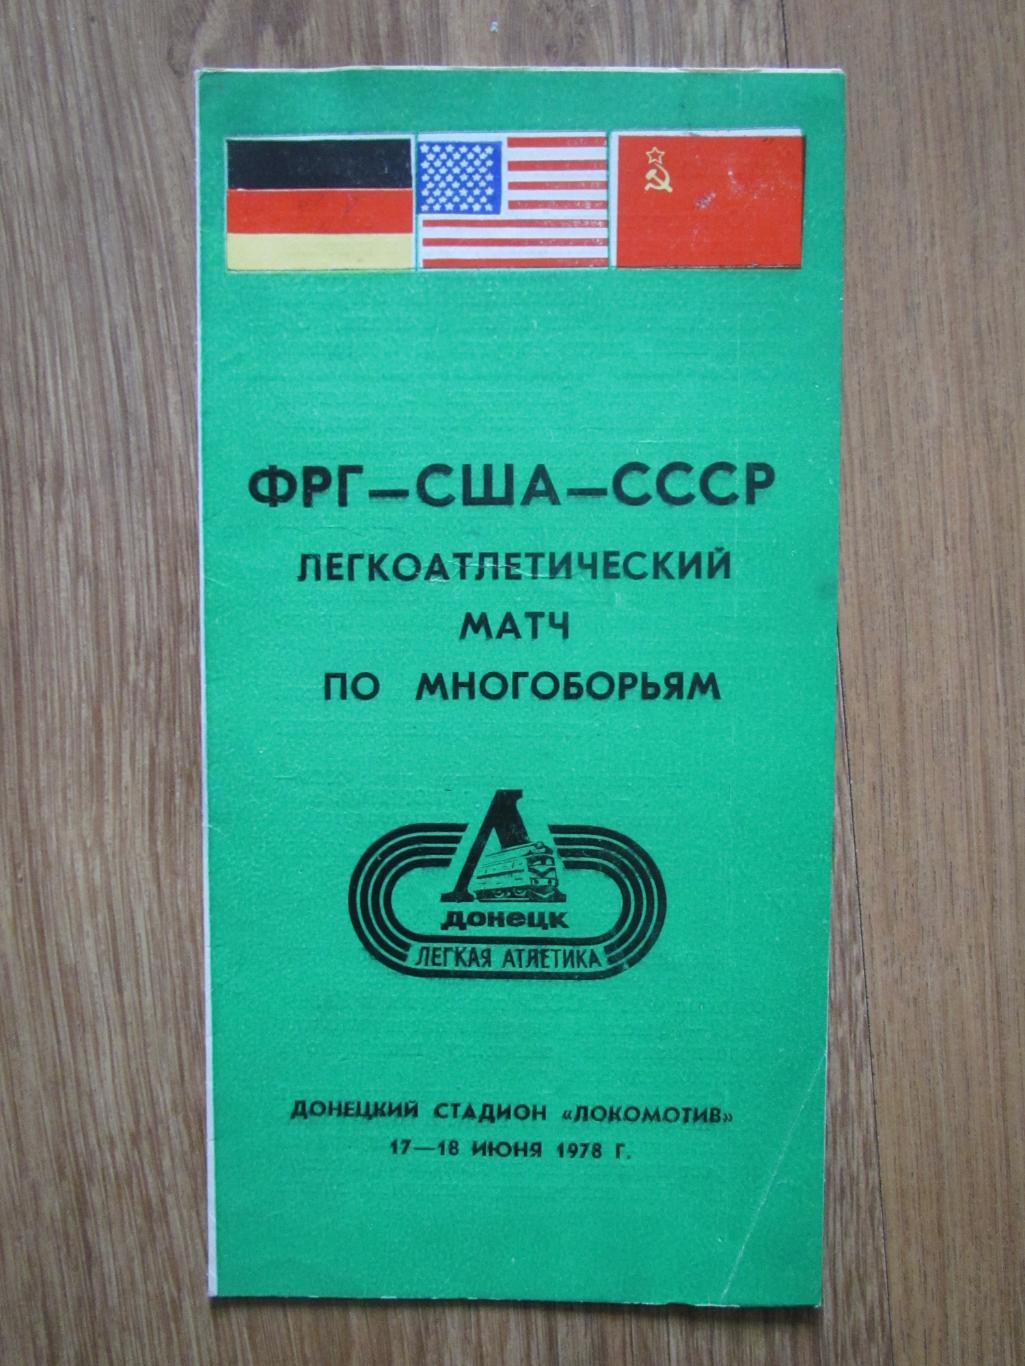 Многоборье ФРГ-США-СССР 17-18.06.1978,г.Донецк